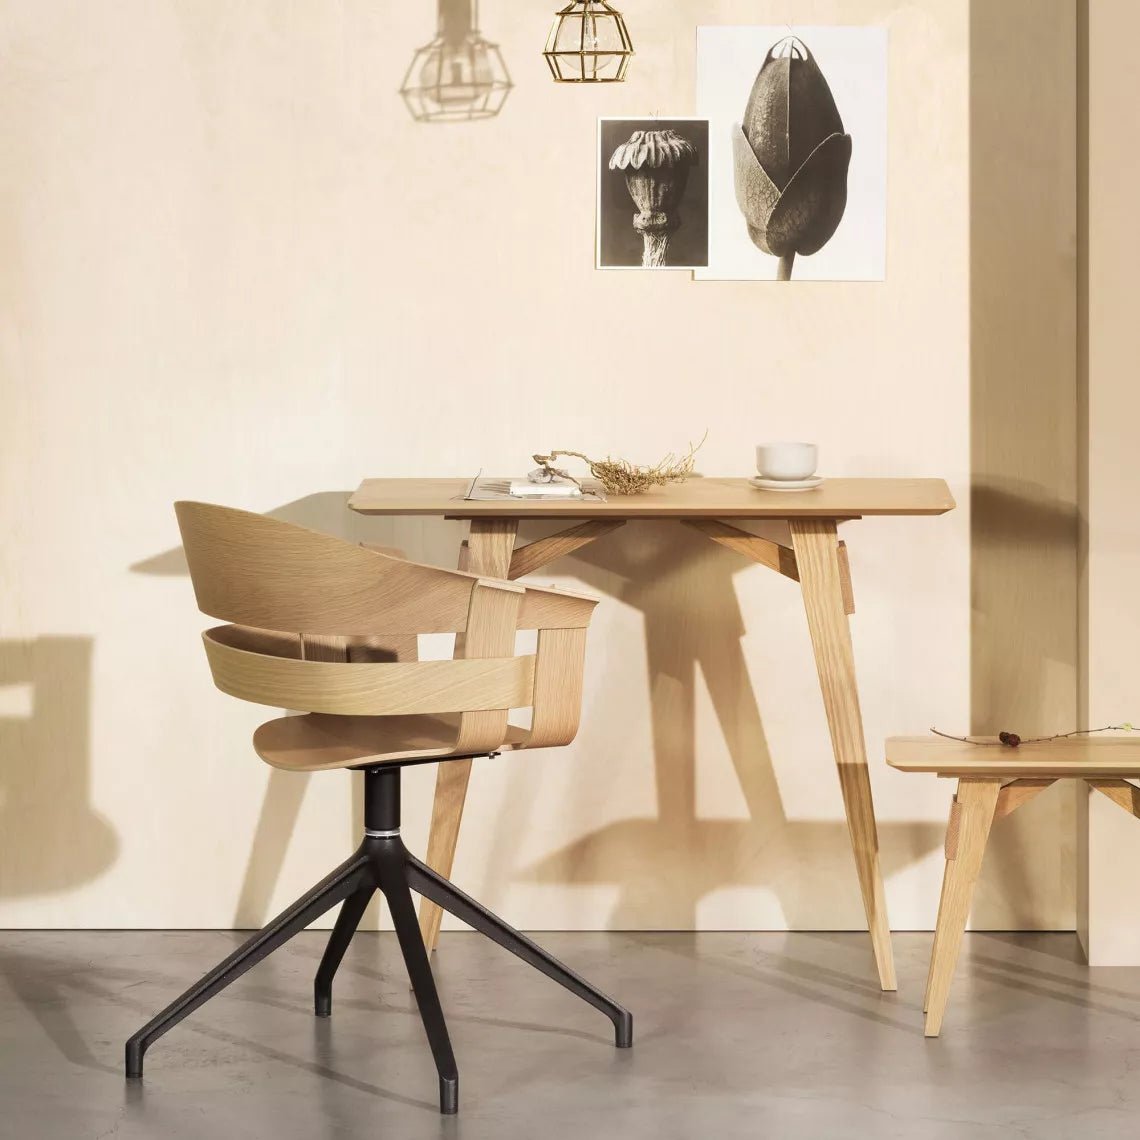 Wick Drehstuhl - Mit Drehständer Chairs von Design House Stockholm